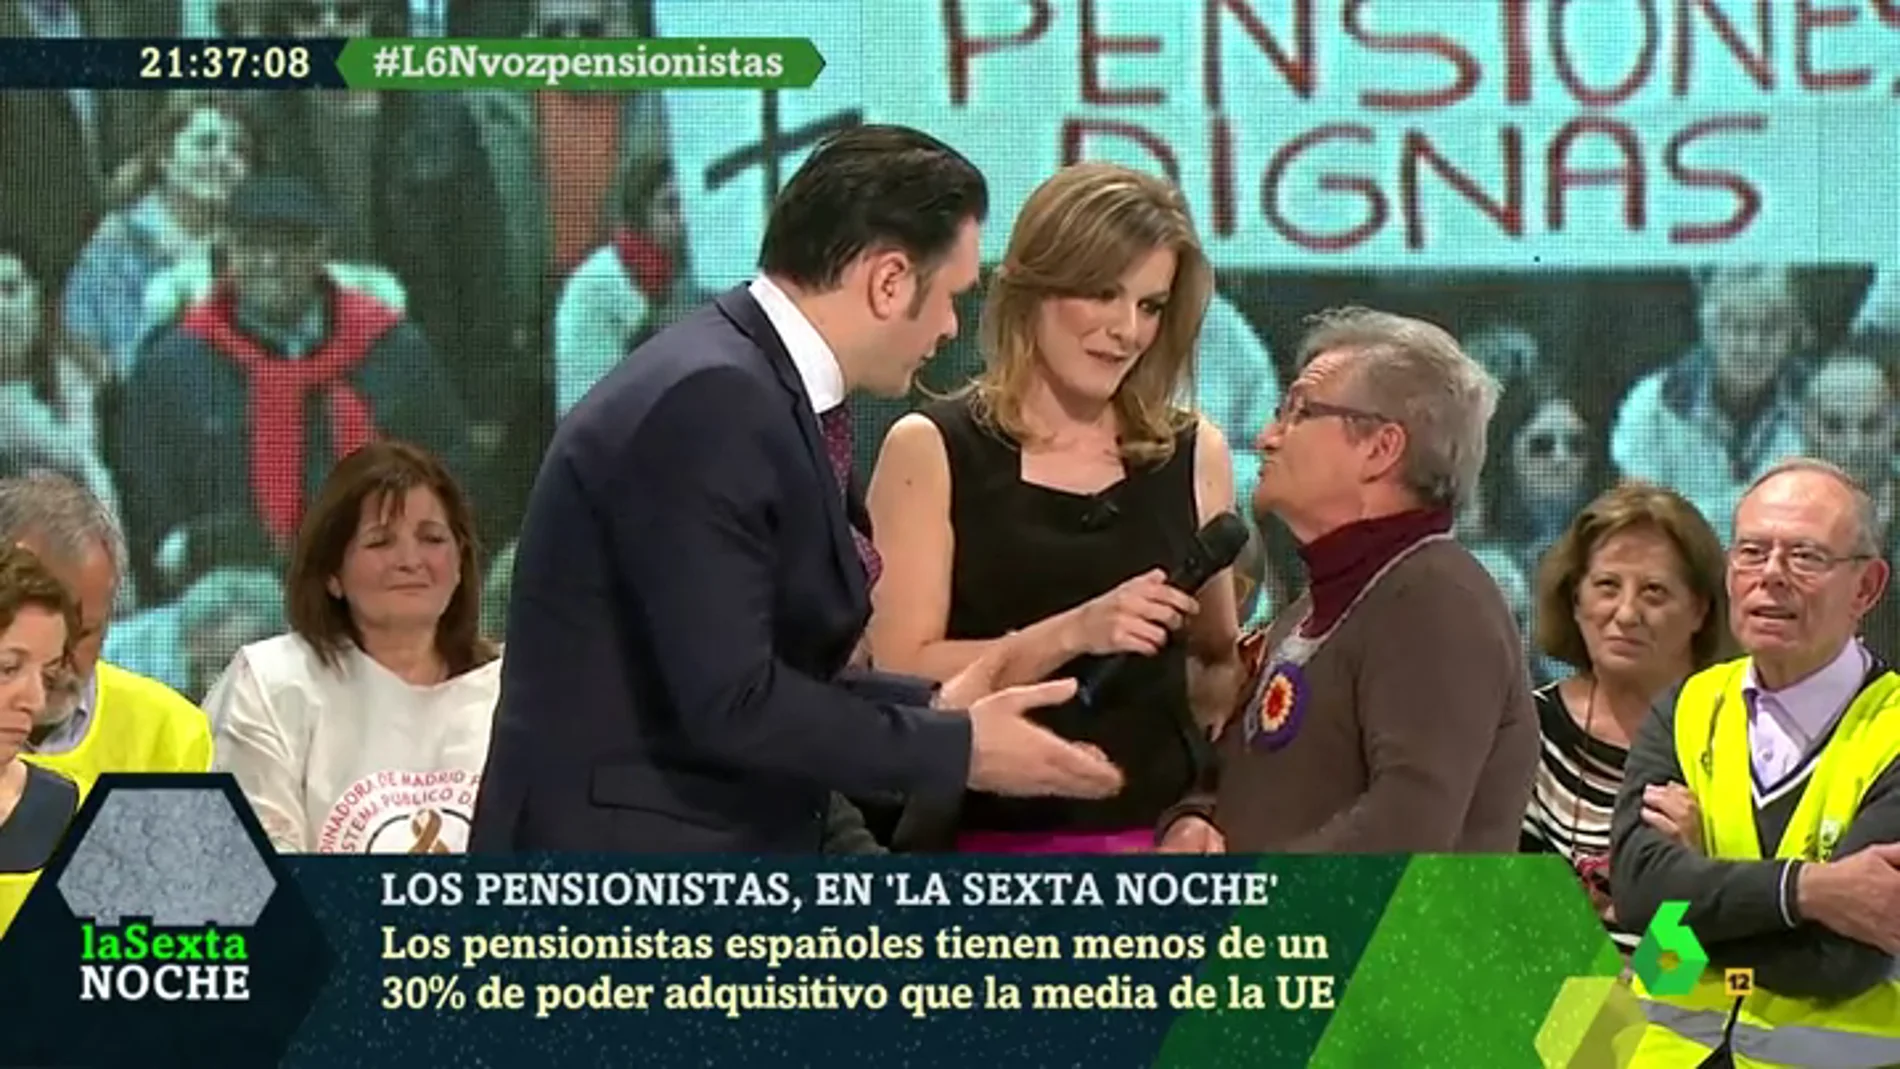 Ana García, pensionista